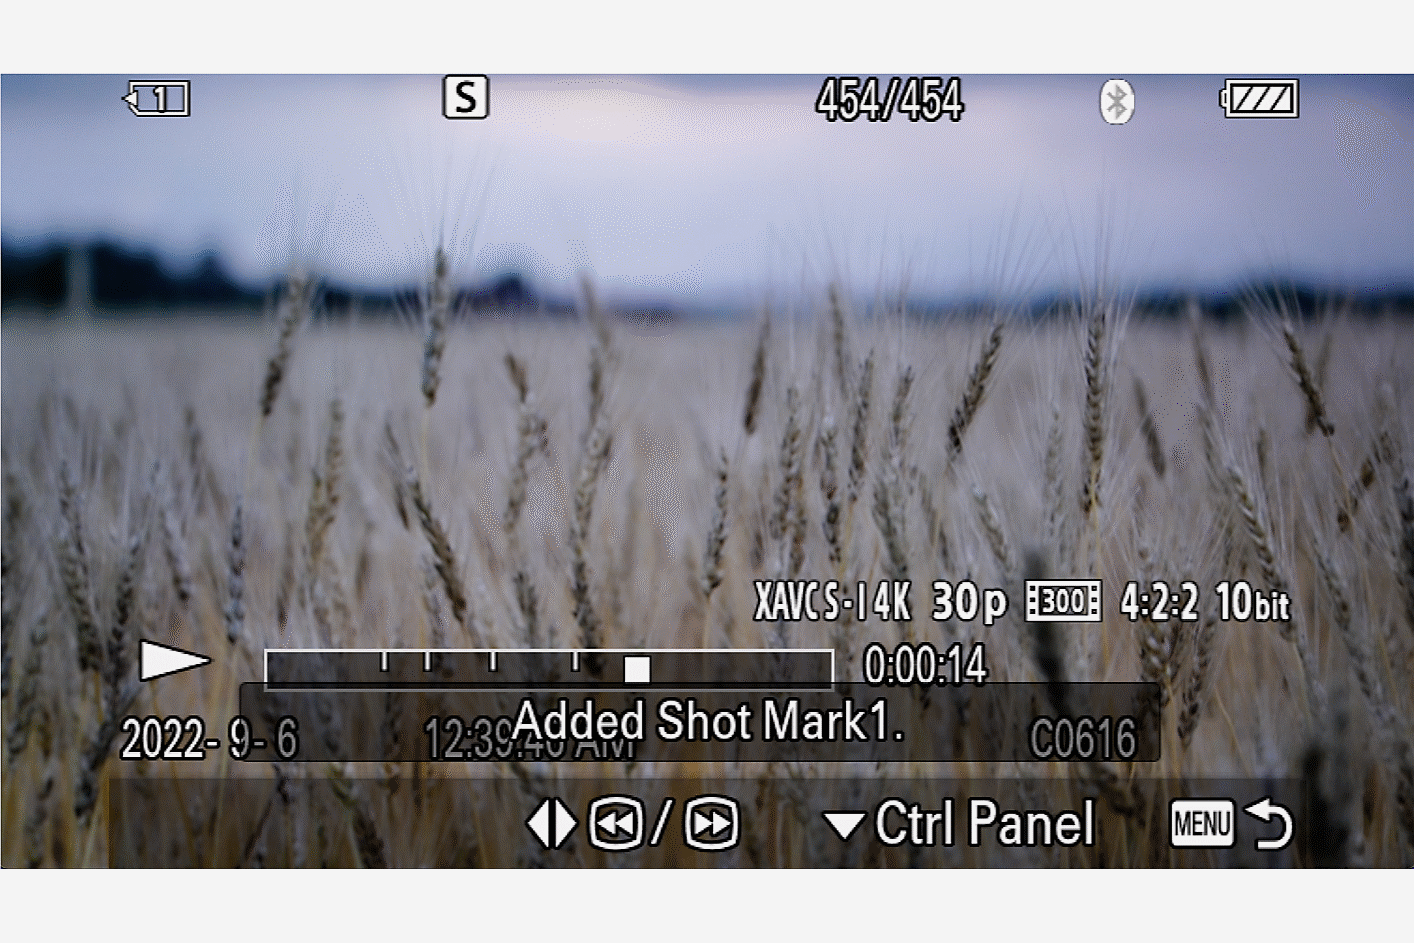 Pantalla de la cámara en la que hay un campo de cebada con un texto superpuesto que indica que se fijó una marca de captura